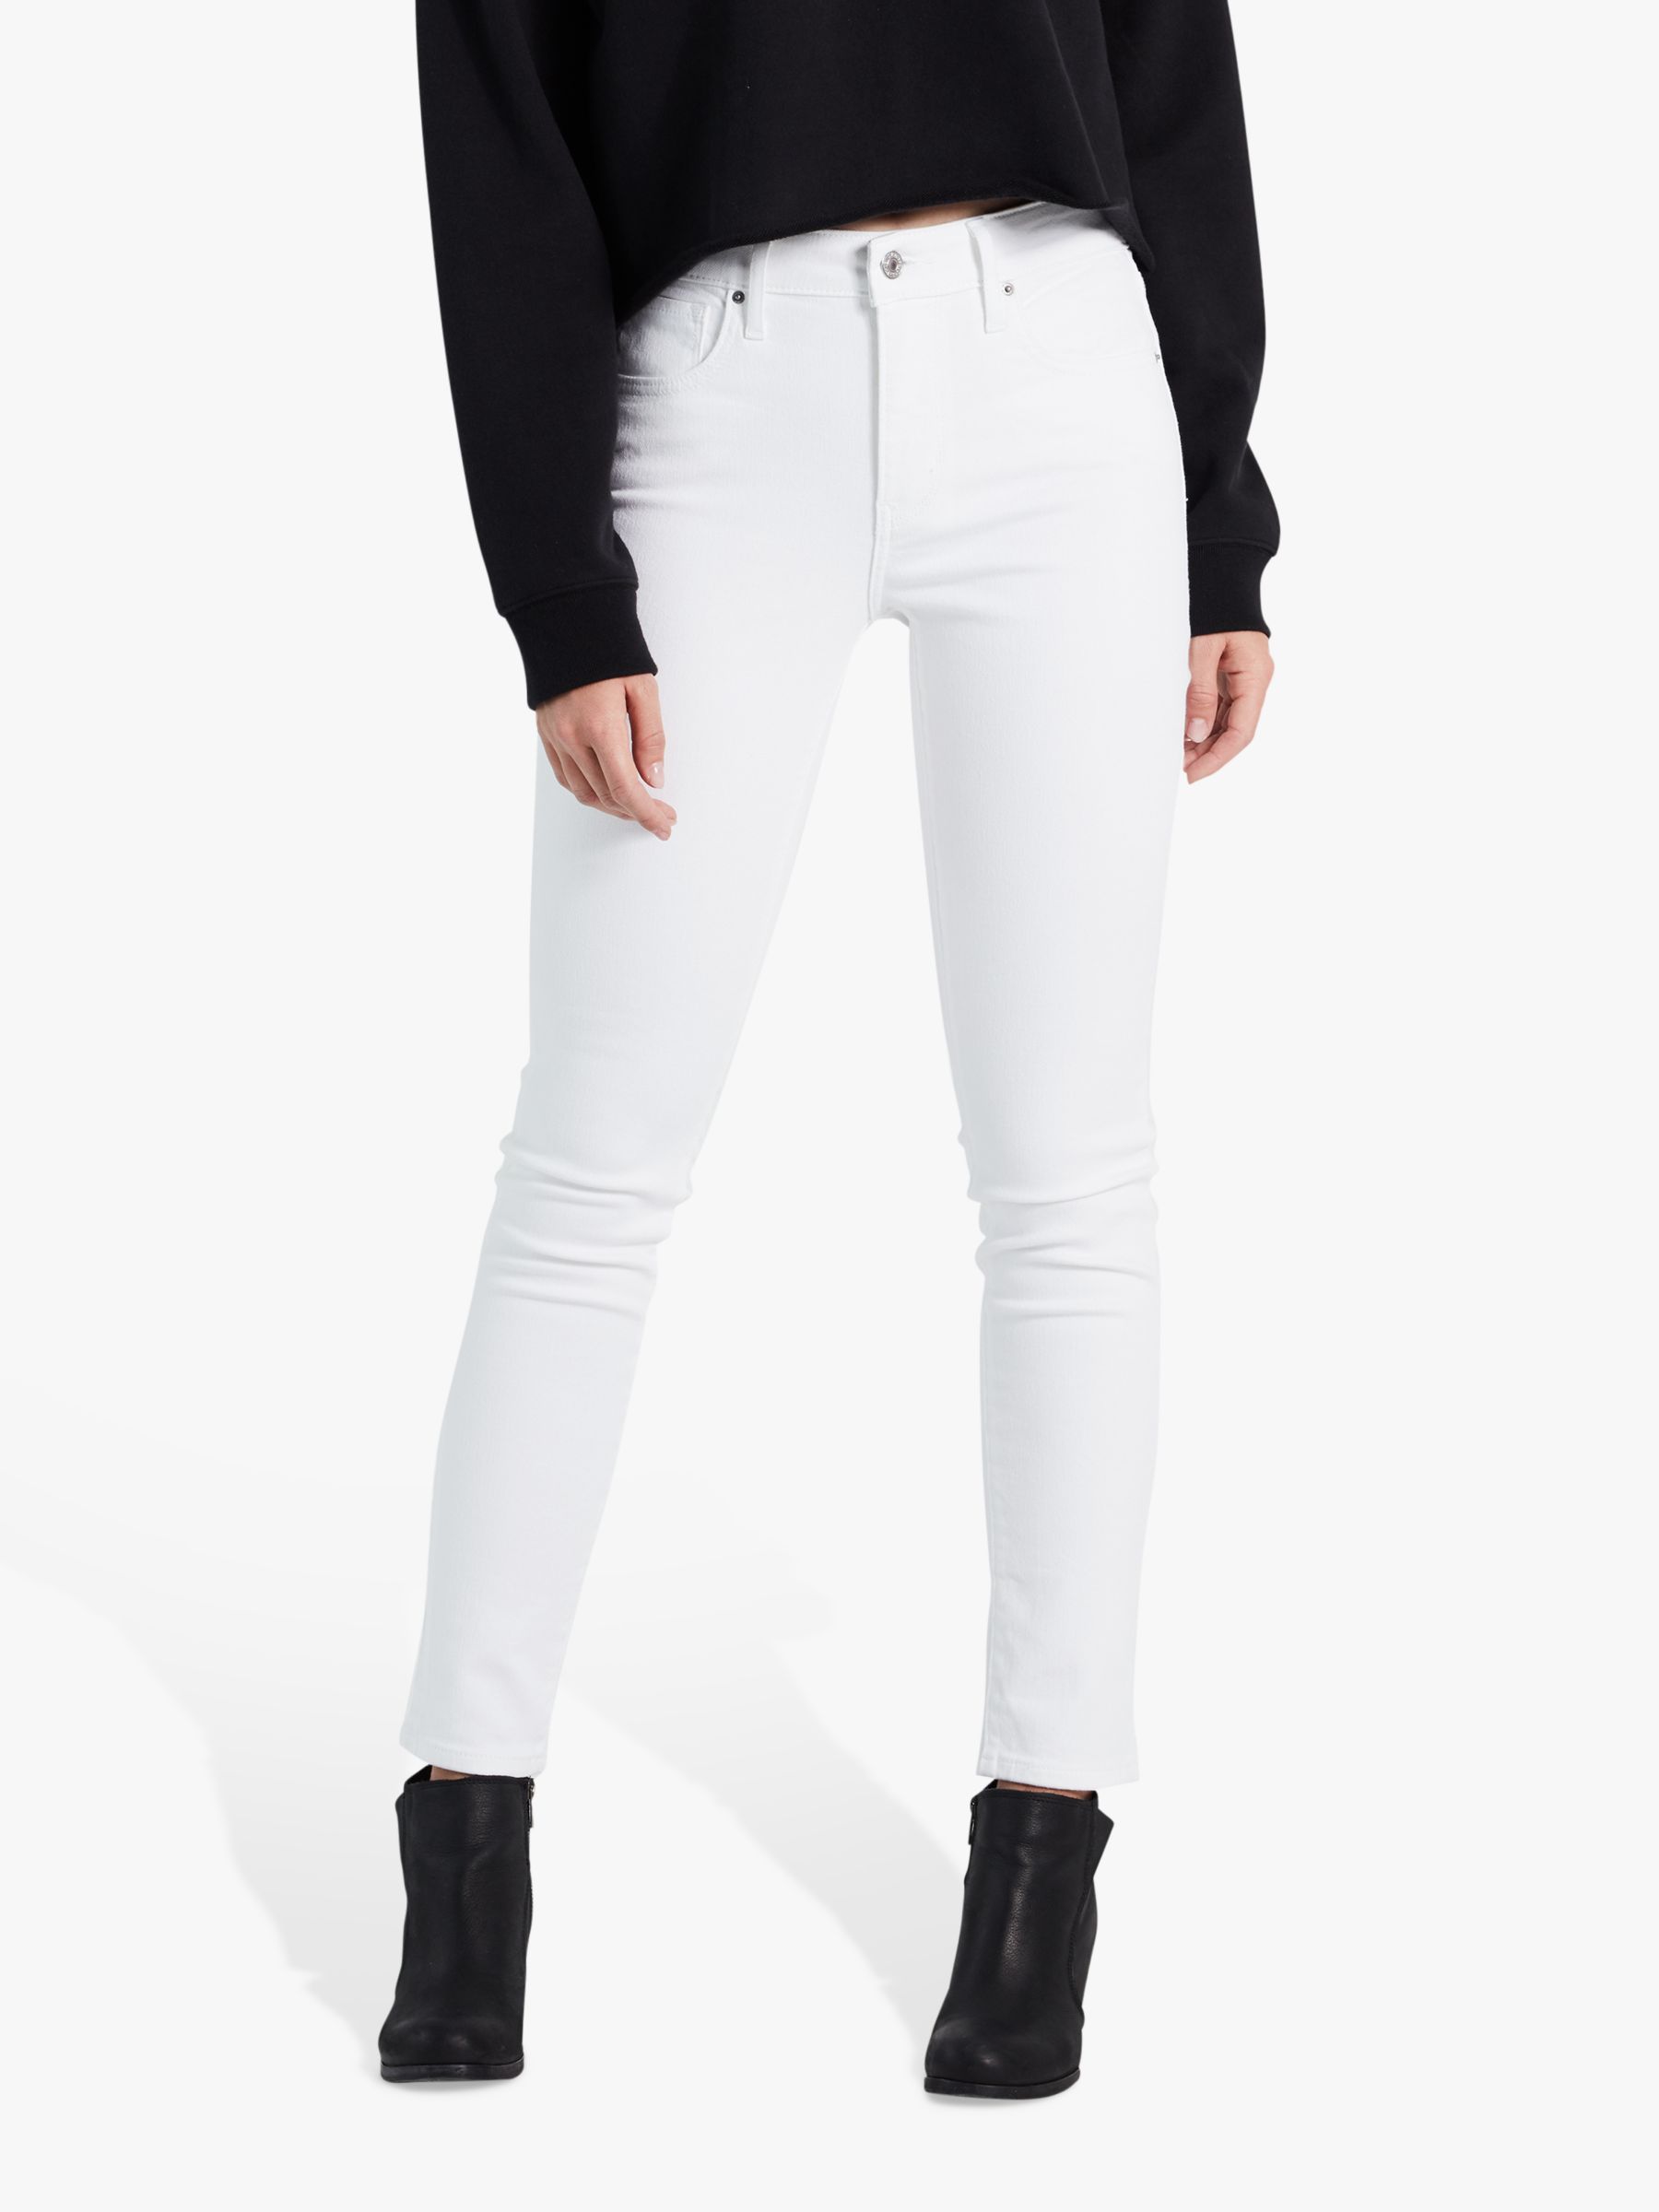 levis white jeans women